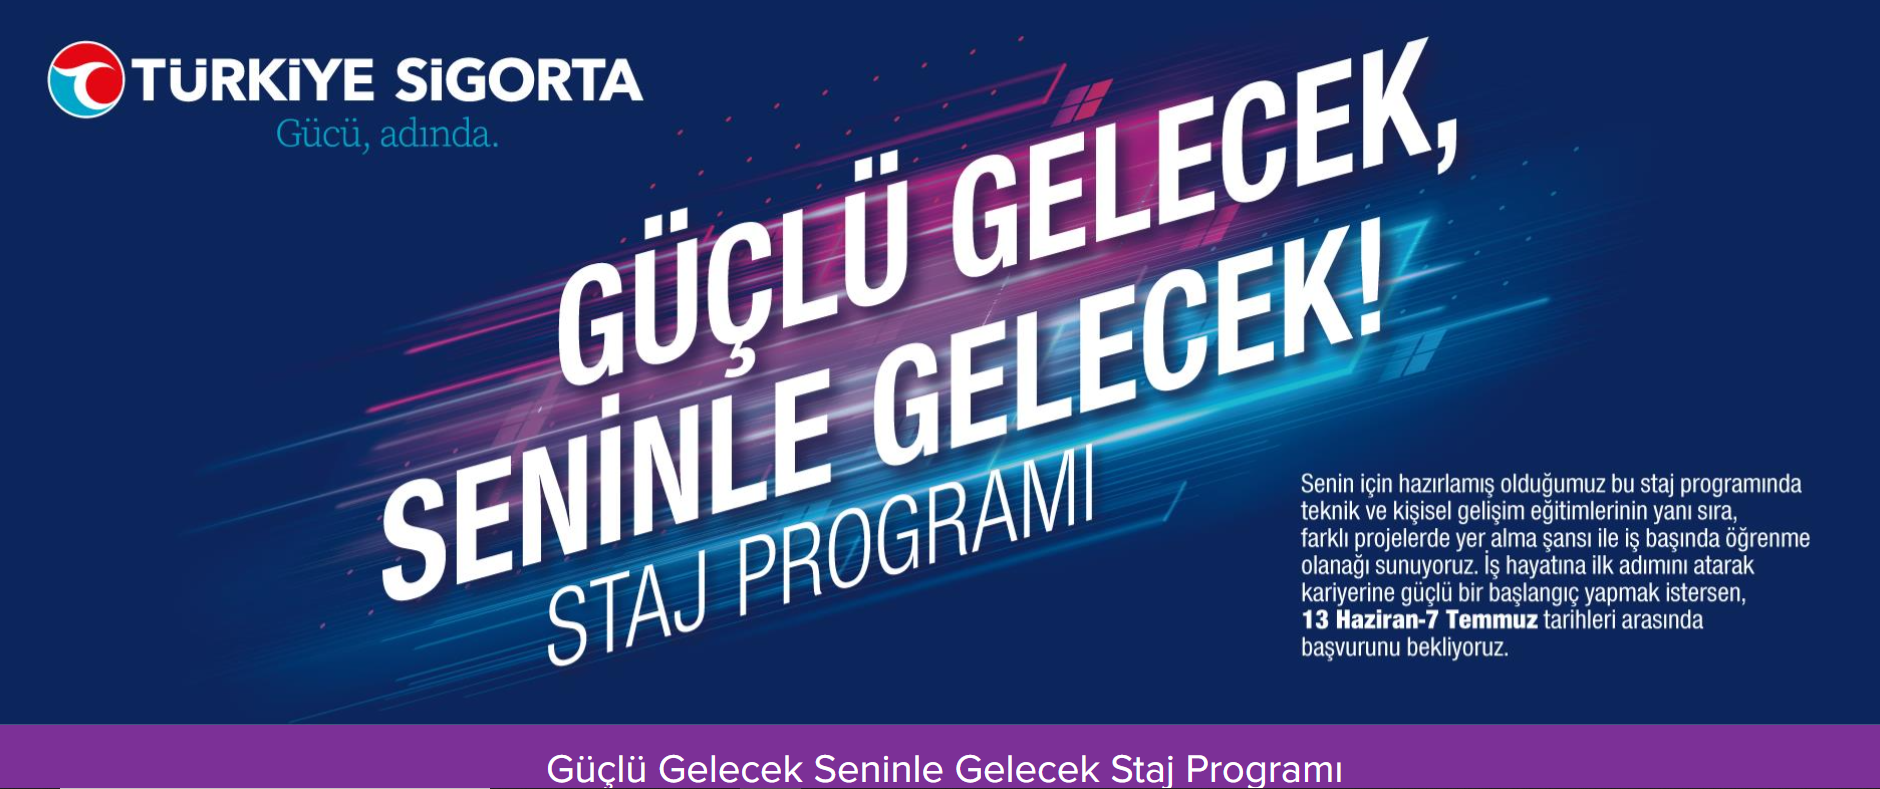 Türkiye Sigorta Duyuru 24.06.2022.png (1.48 MB)